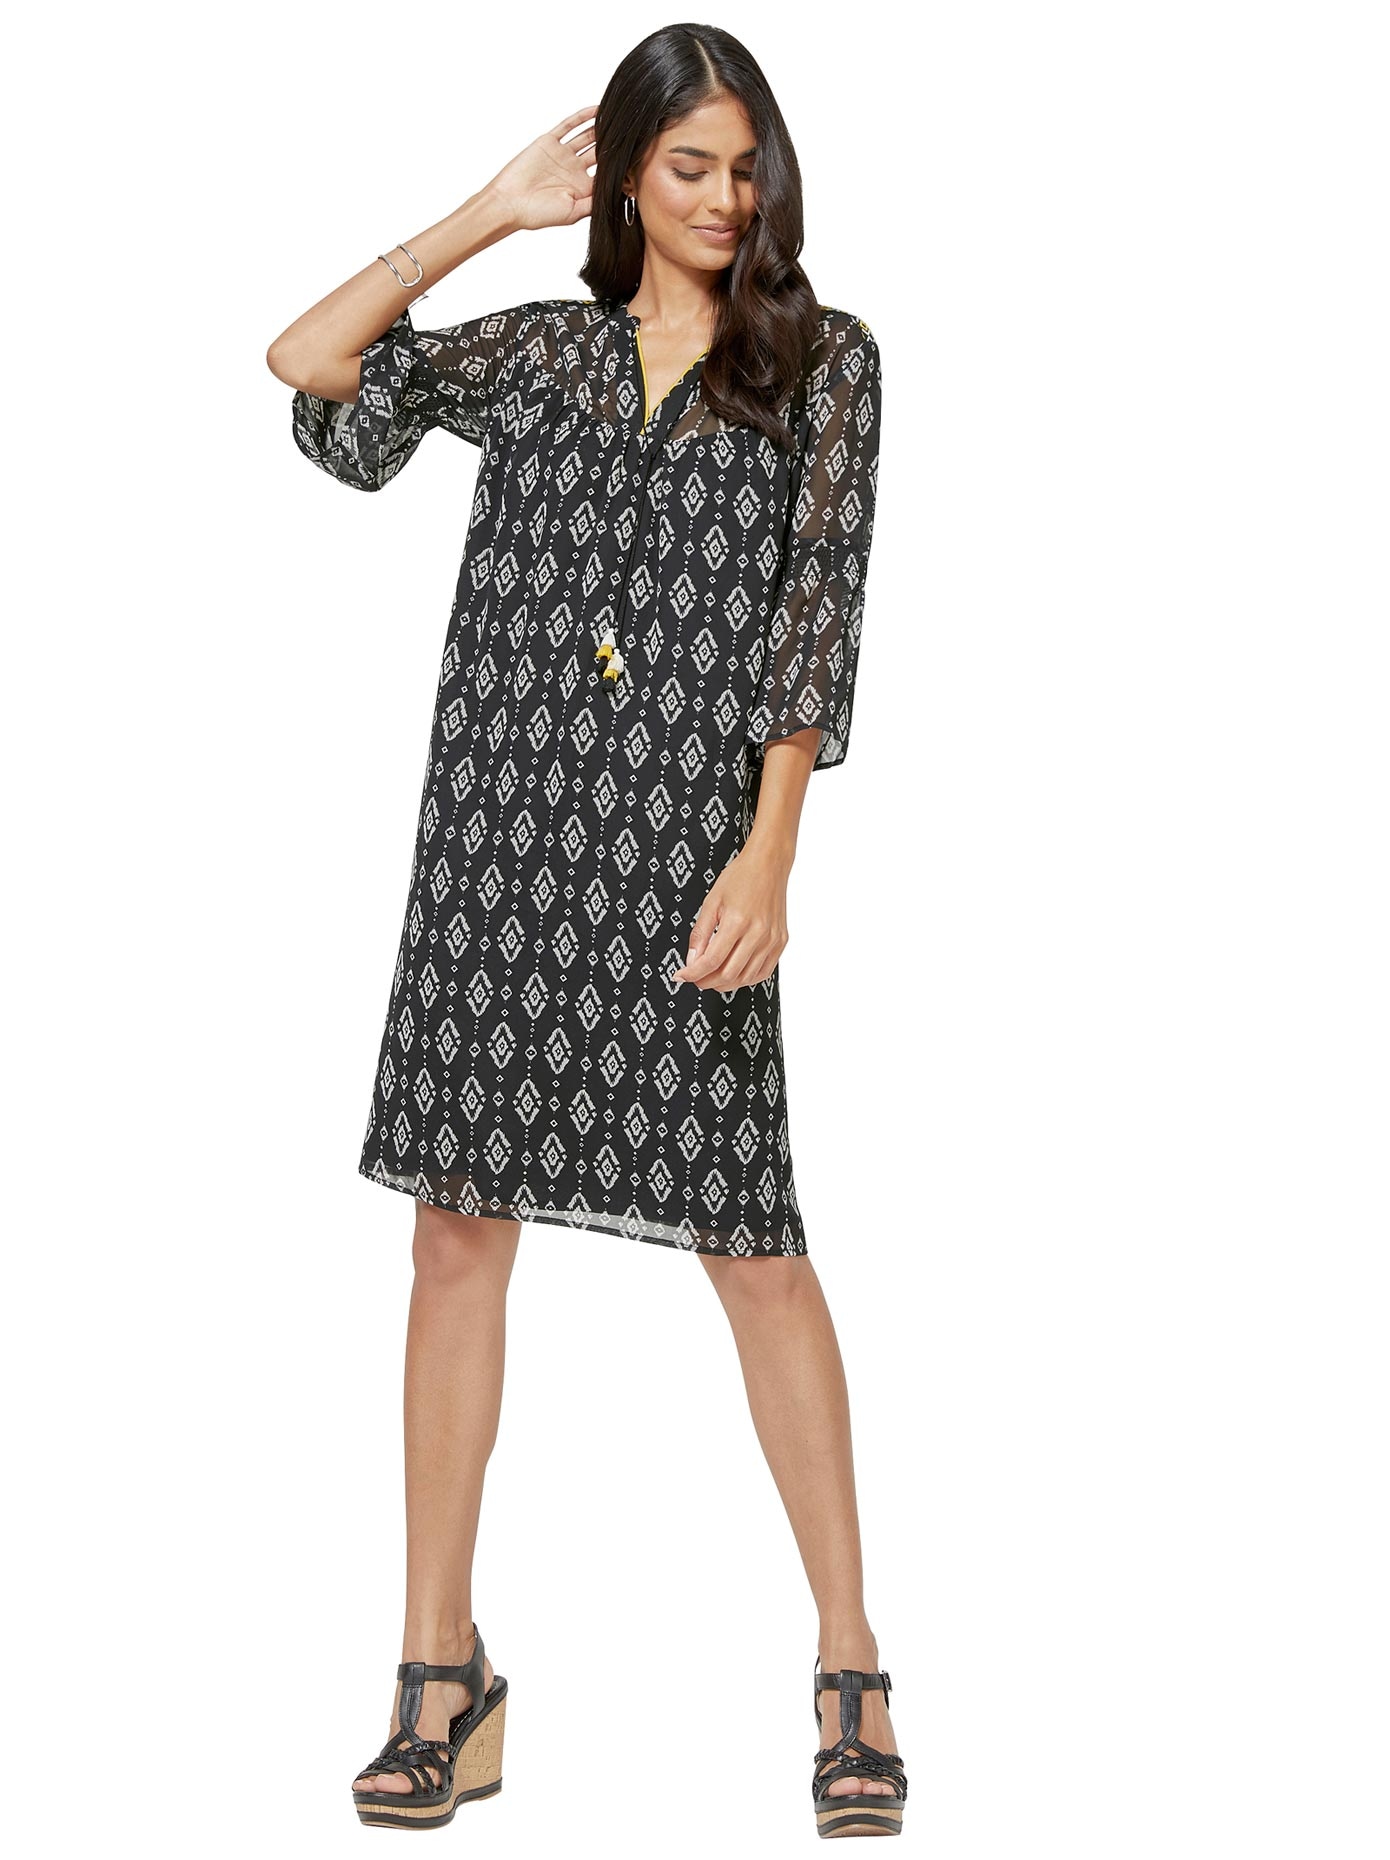 Chiffonkleid kaufen »Kleid« OTTO Inspirationen im Online Shop